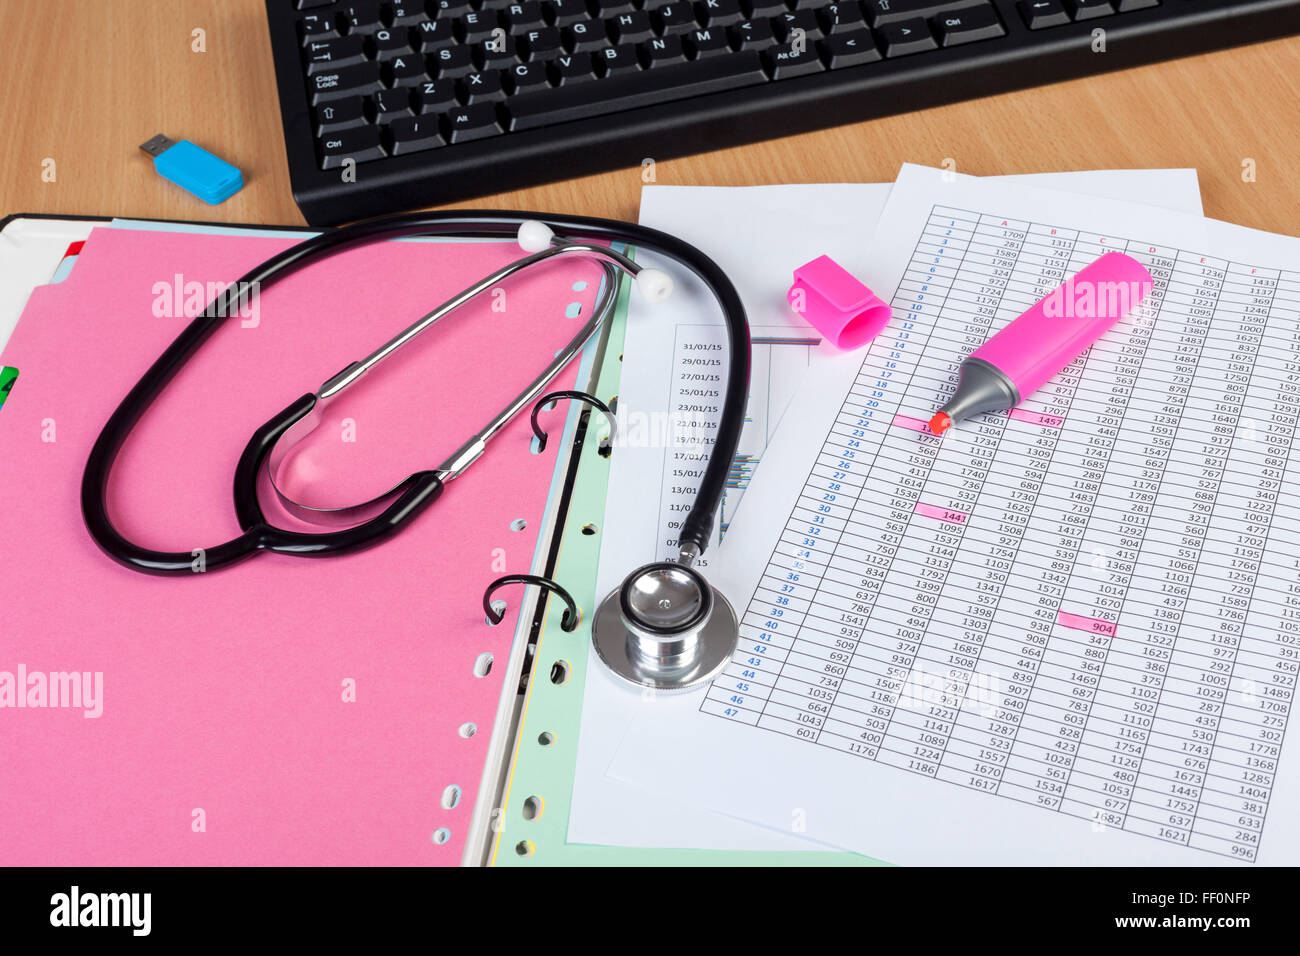 Medizinisches Personal Desktop zeigt ein Stethoskop, Computertastatur und einige finanzielle Berichte in einem Ordner Stockfoto